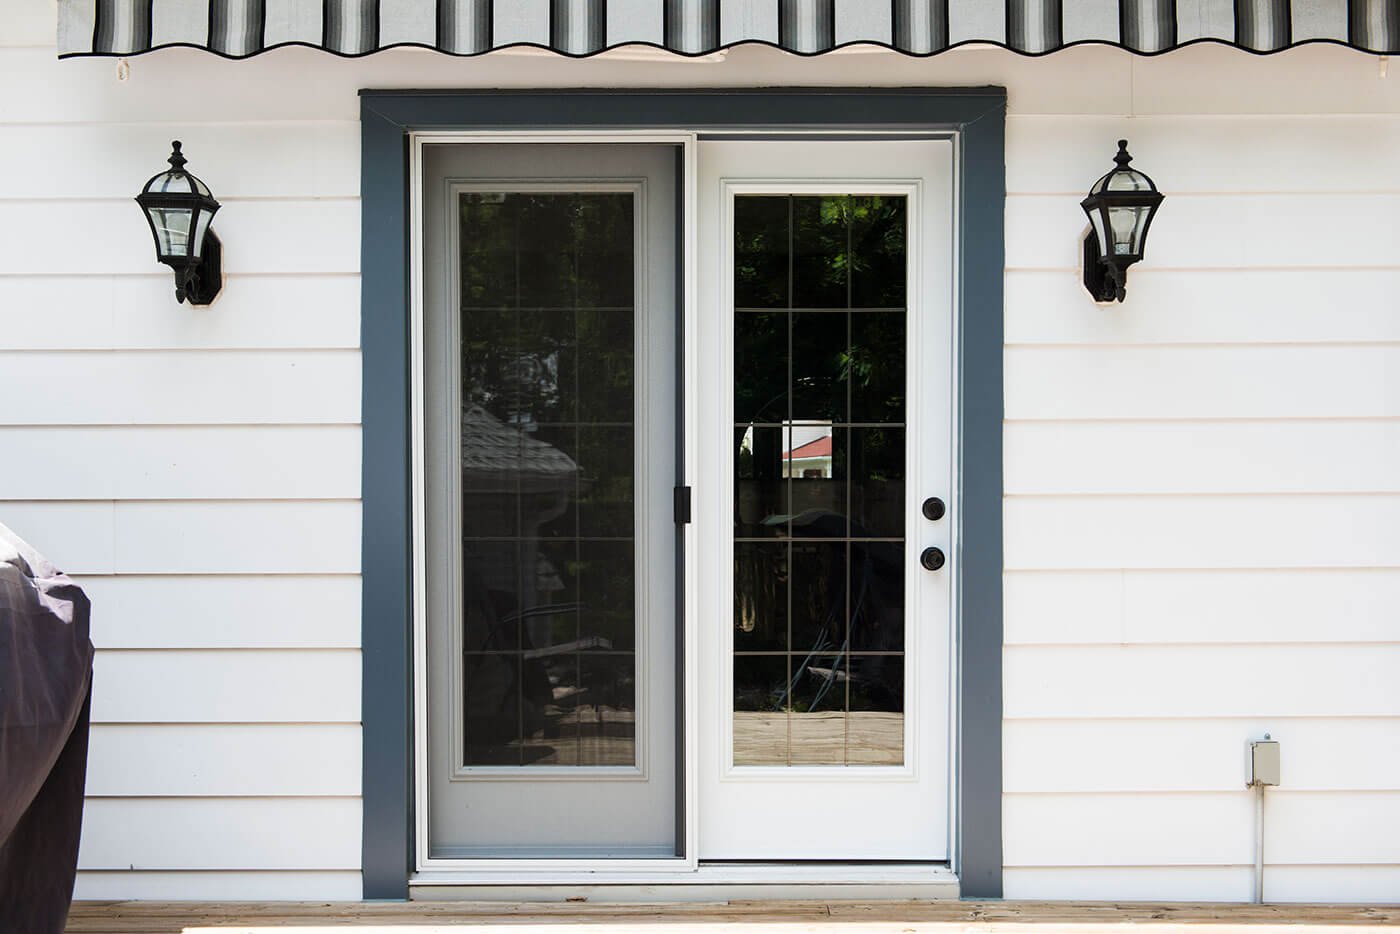 Custom Made White Garden Doors For Smaller Home With White Vinyl Siding